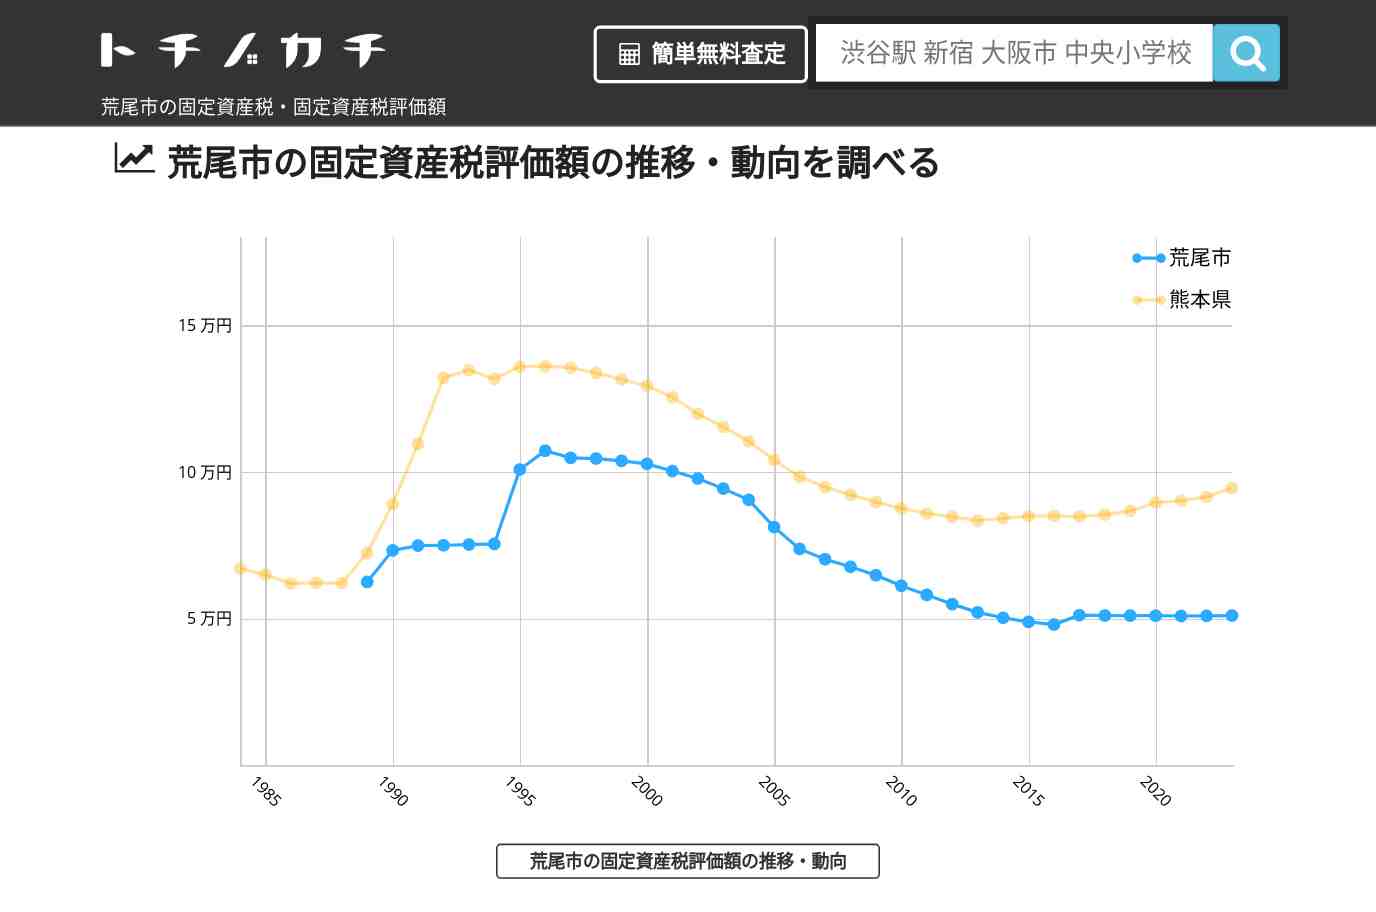 万田小学校(熊本県 荒尾市)周辺の固定資産税・固定資産税評価額 | トチノカチ